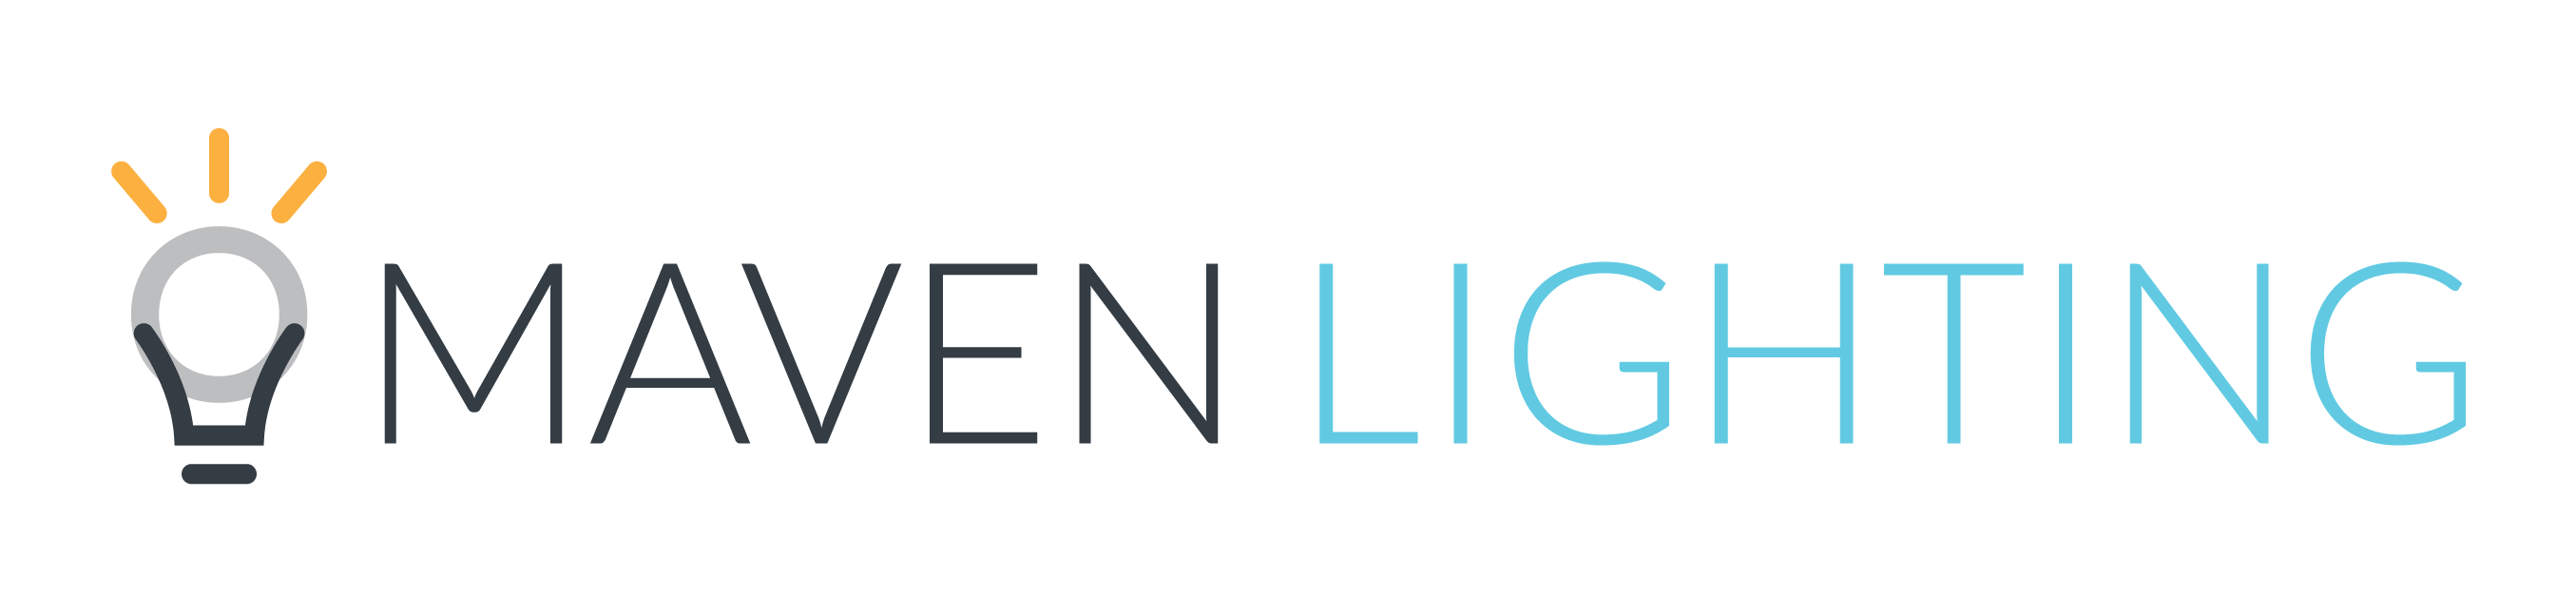 Maven Lighting Logo